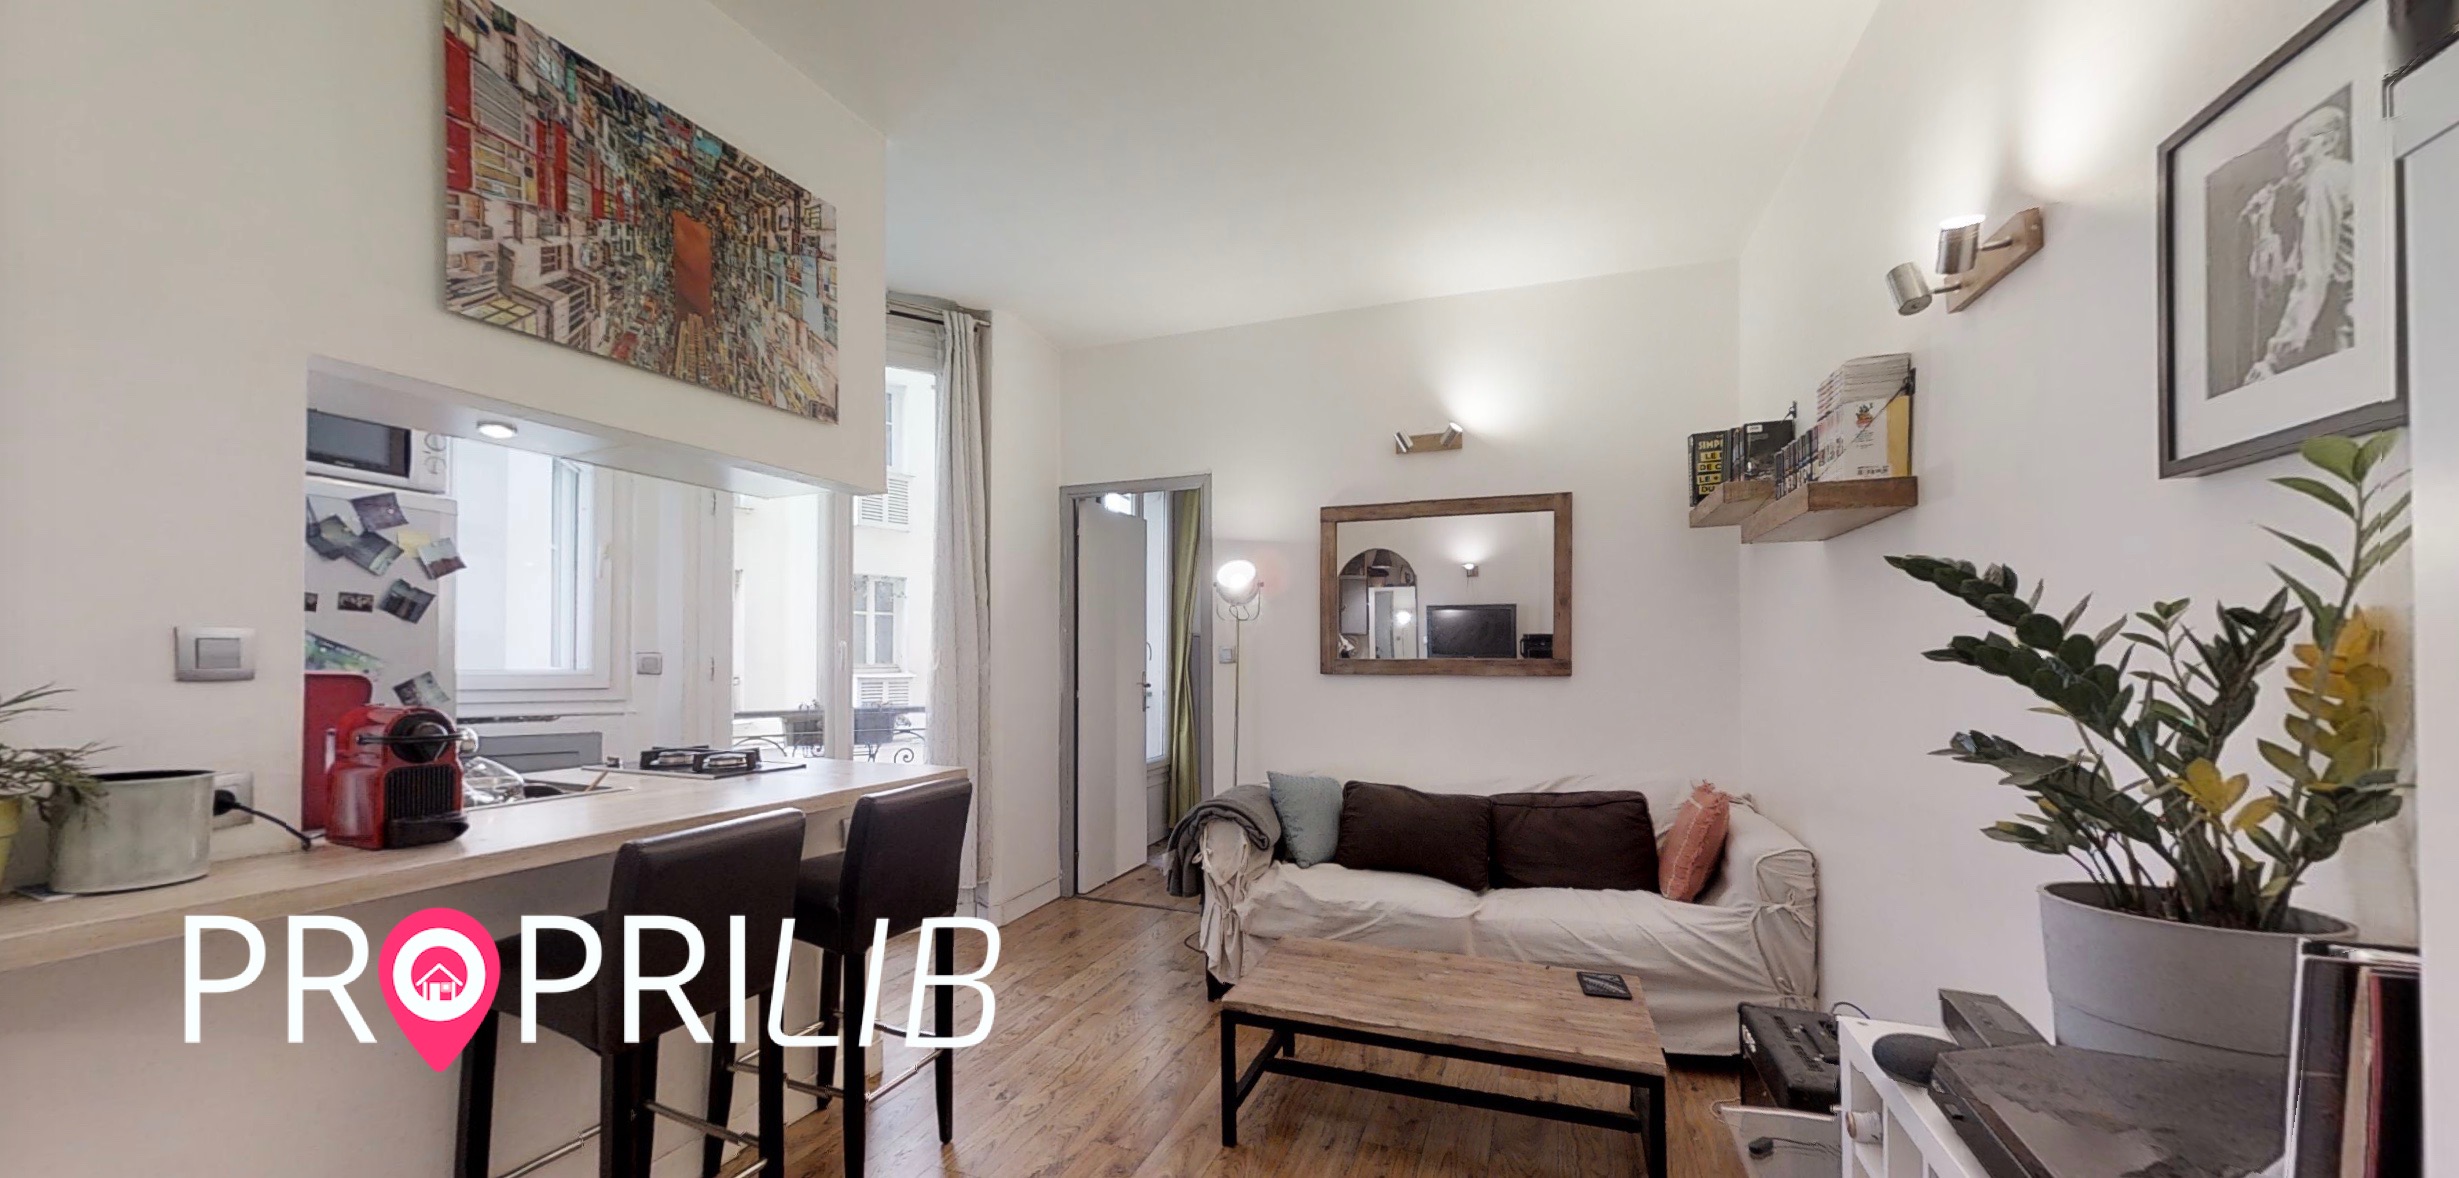 PropriLib l’agence immobilière en ligne à prix fixe vend cet appartement à Paris 18 ème